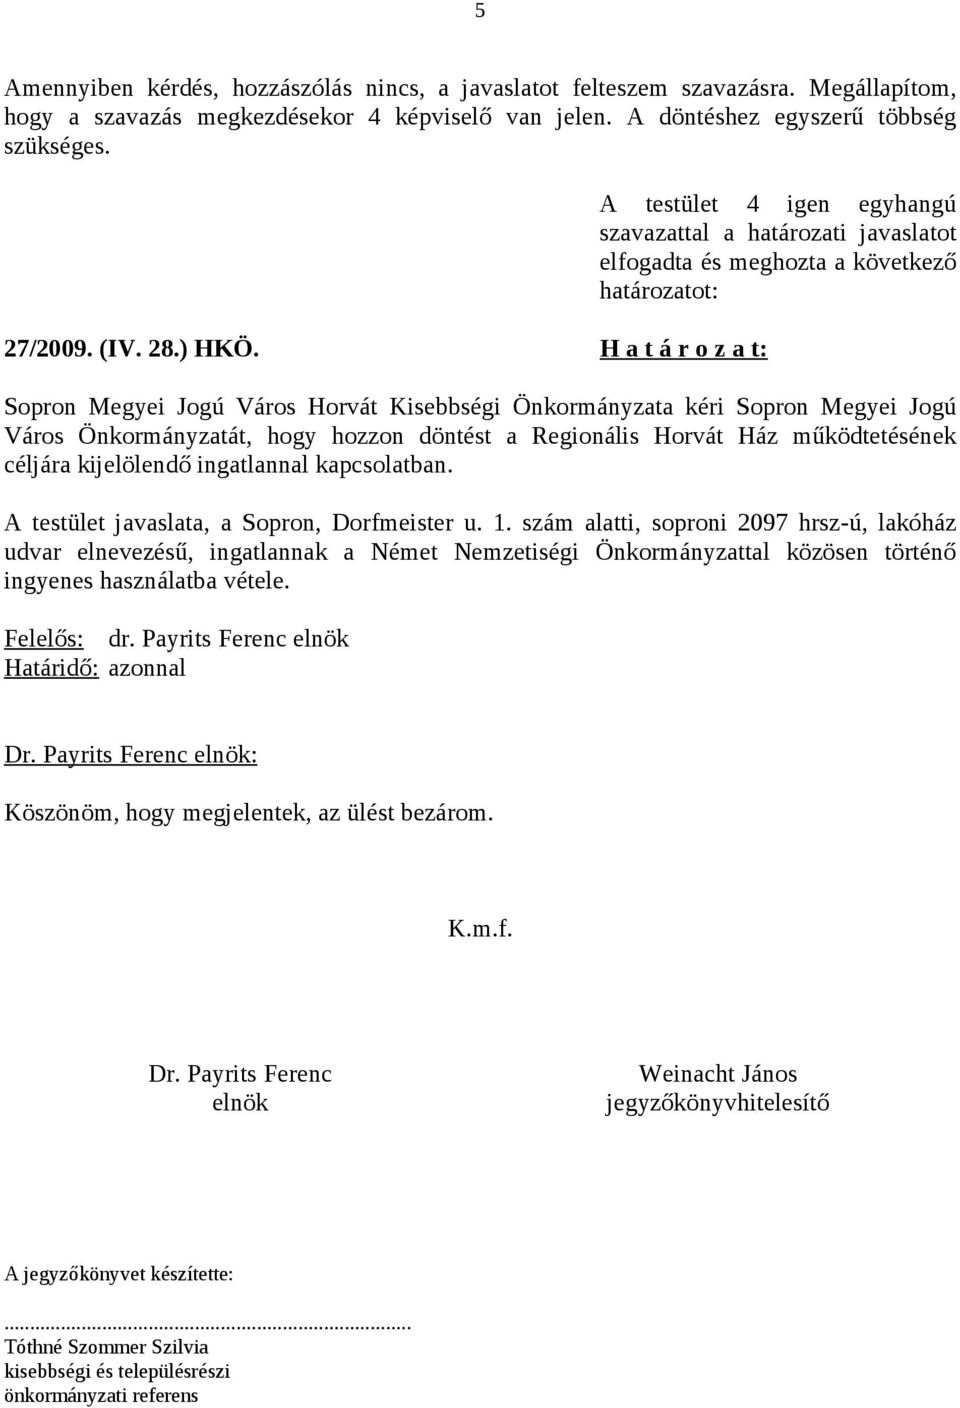 H a t á r o z a t: Sopron Megyei Jogú Város Horvát Kisebbségi Önkormányzata kéri Sopron Megyei Jogú Város Önkormányzatát, hogy hozzon döntést a Regionális Horvát Ház működtetésének céljára